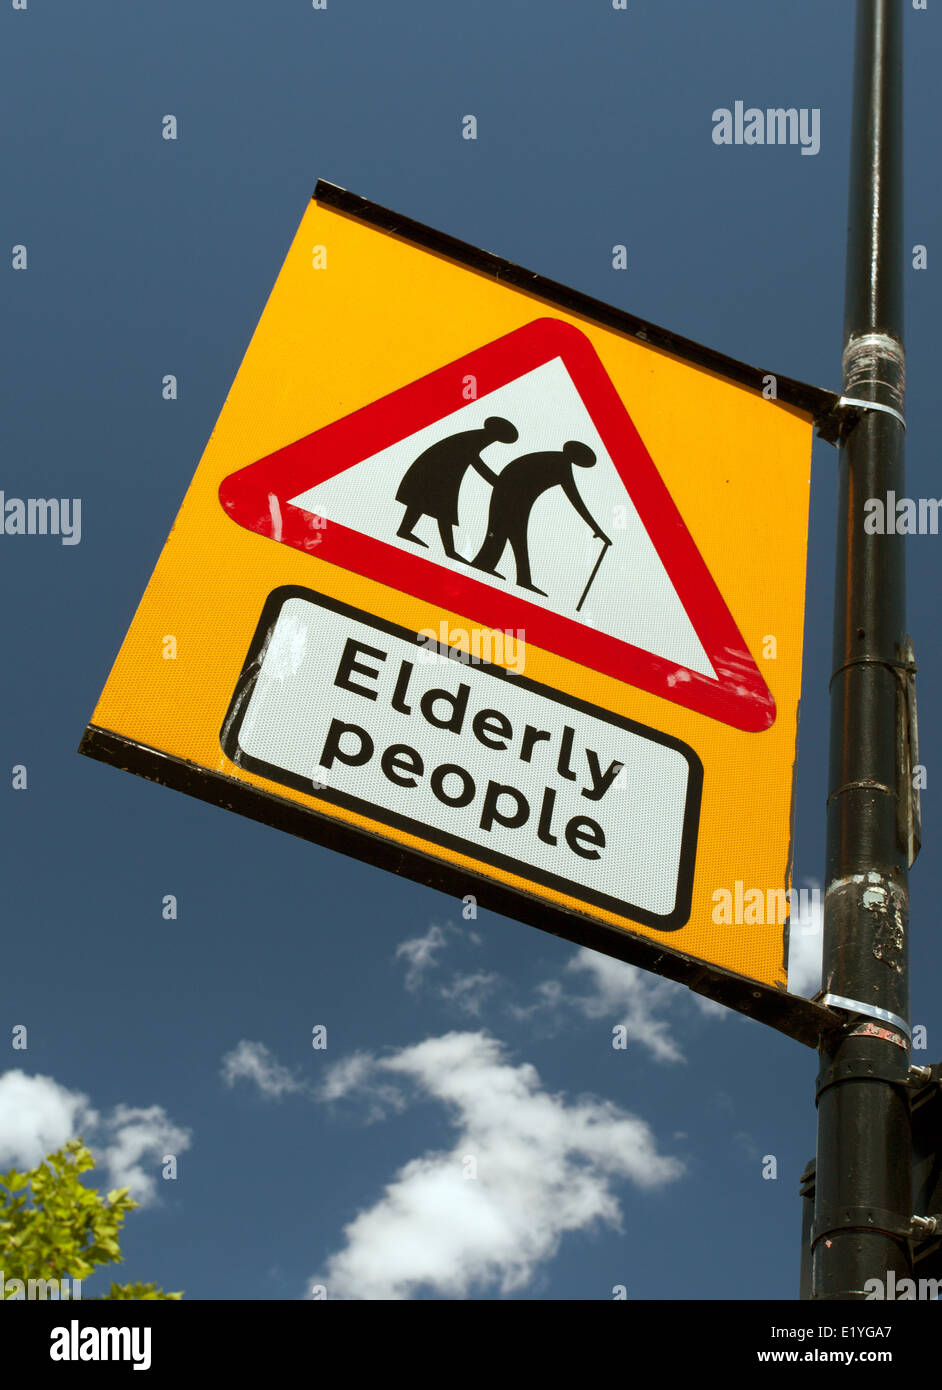 Gli anziani cartello stradale, West London Foto Stock